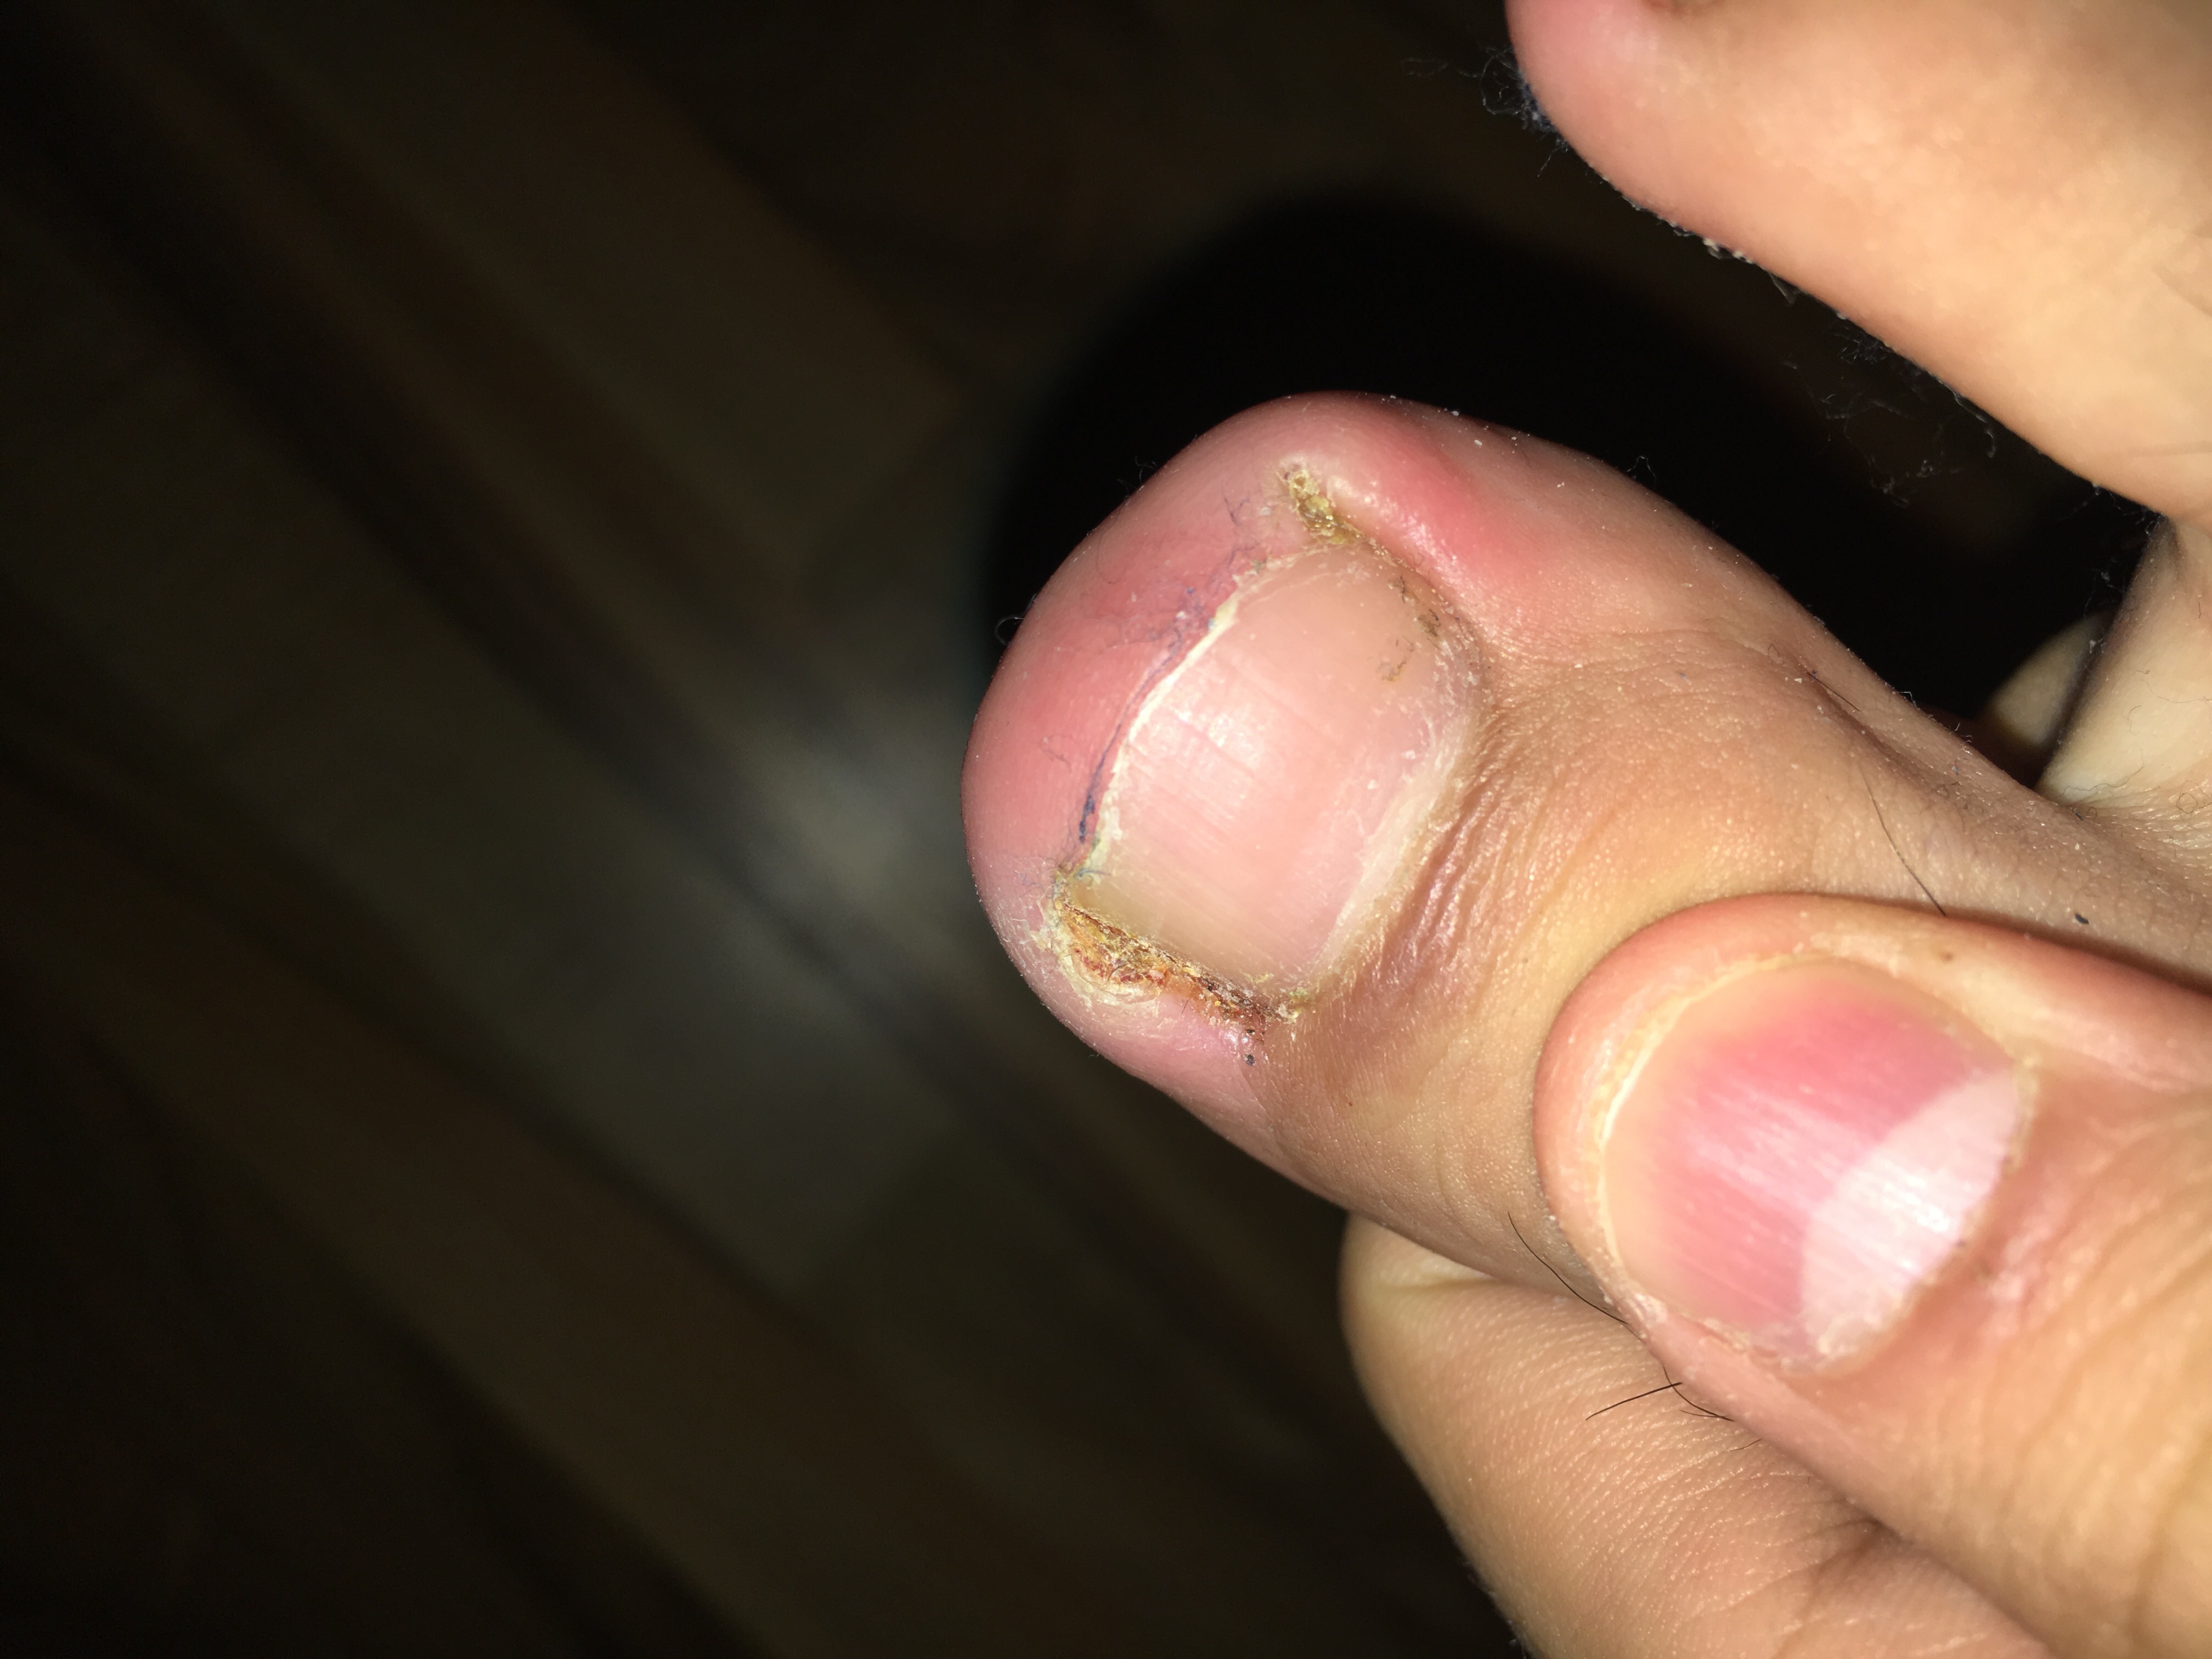 Fuß schmerz nagel schmerzt (foto) ohne arzt bitte? (Gesundheit und